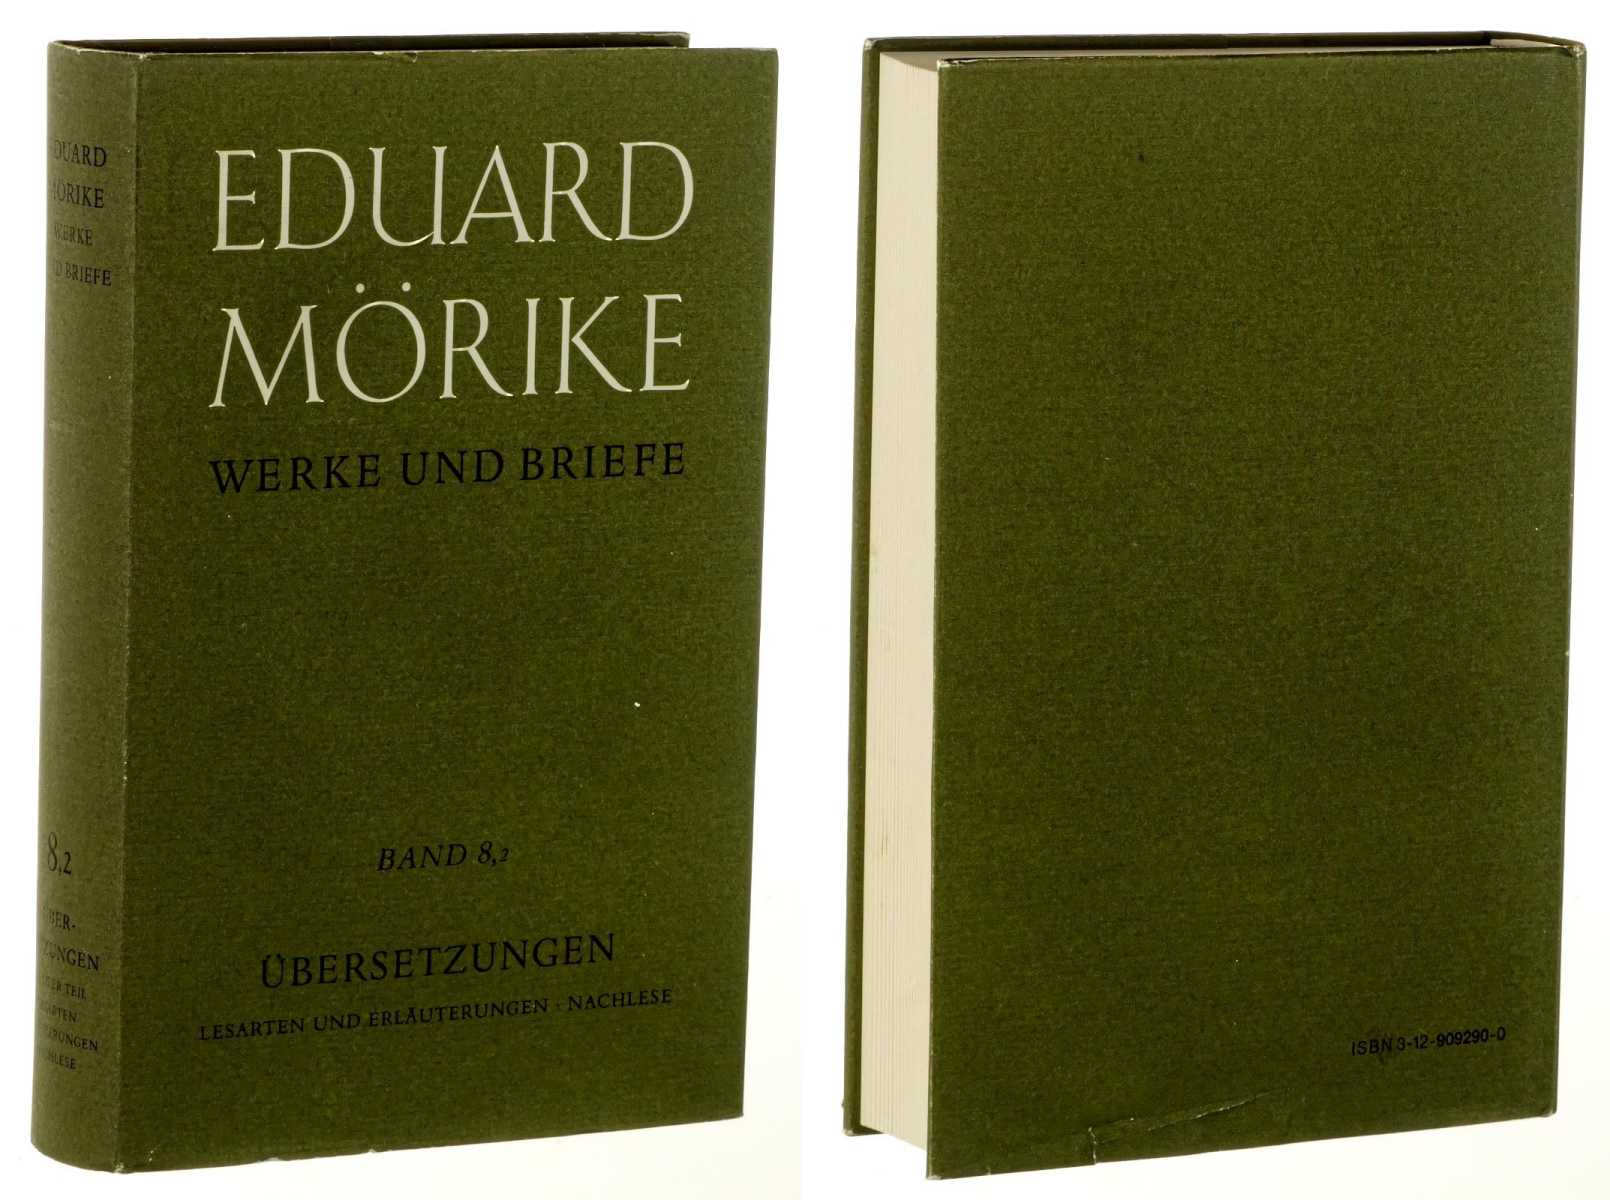 Mörike, Eduard:  Werke und Briefe. Historisch-kritische Gesamtausgabe. Hrsg. von Bernhard Zeller. Band 8/2: Teil 2. Lesarten und Erläuterungen, Nachlese. 